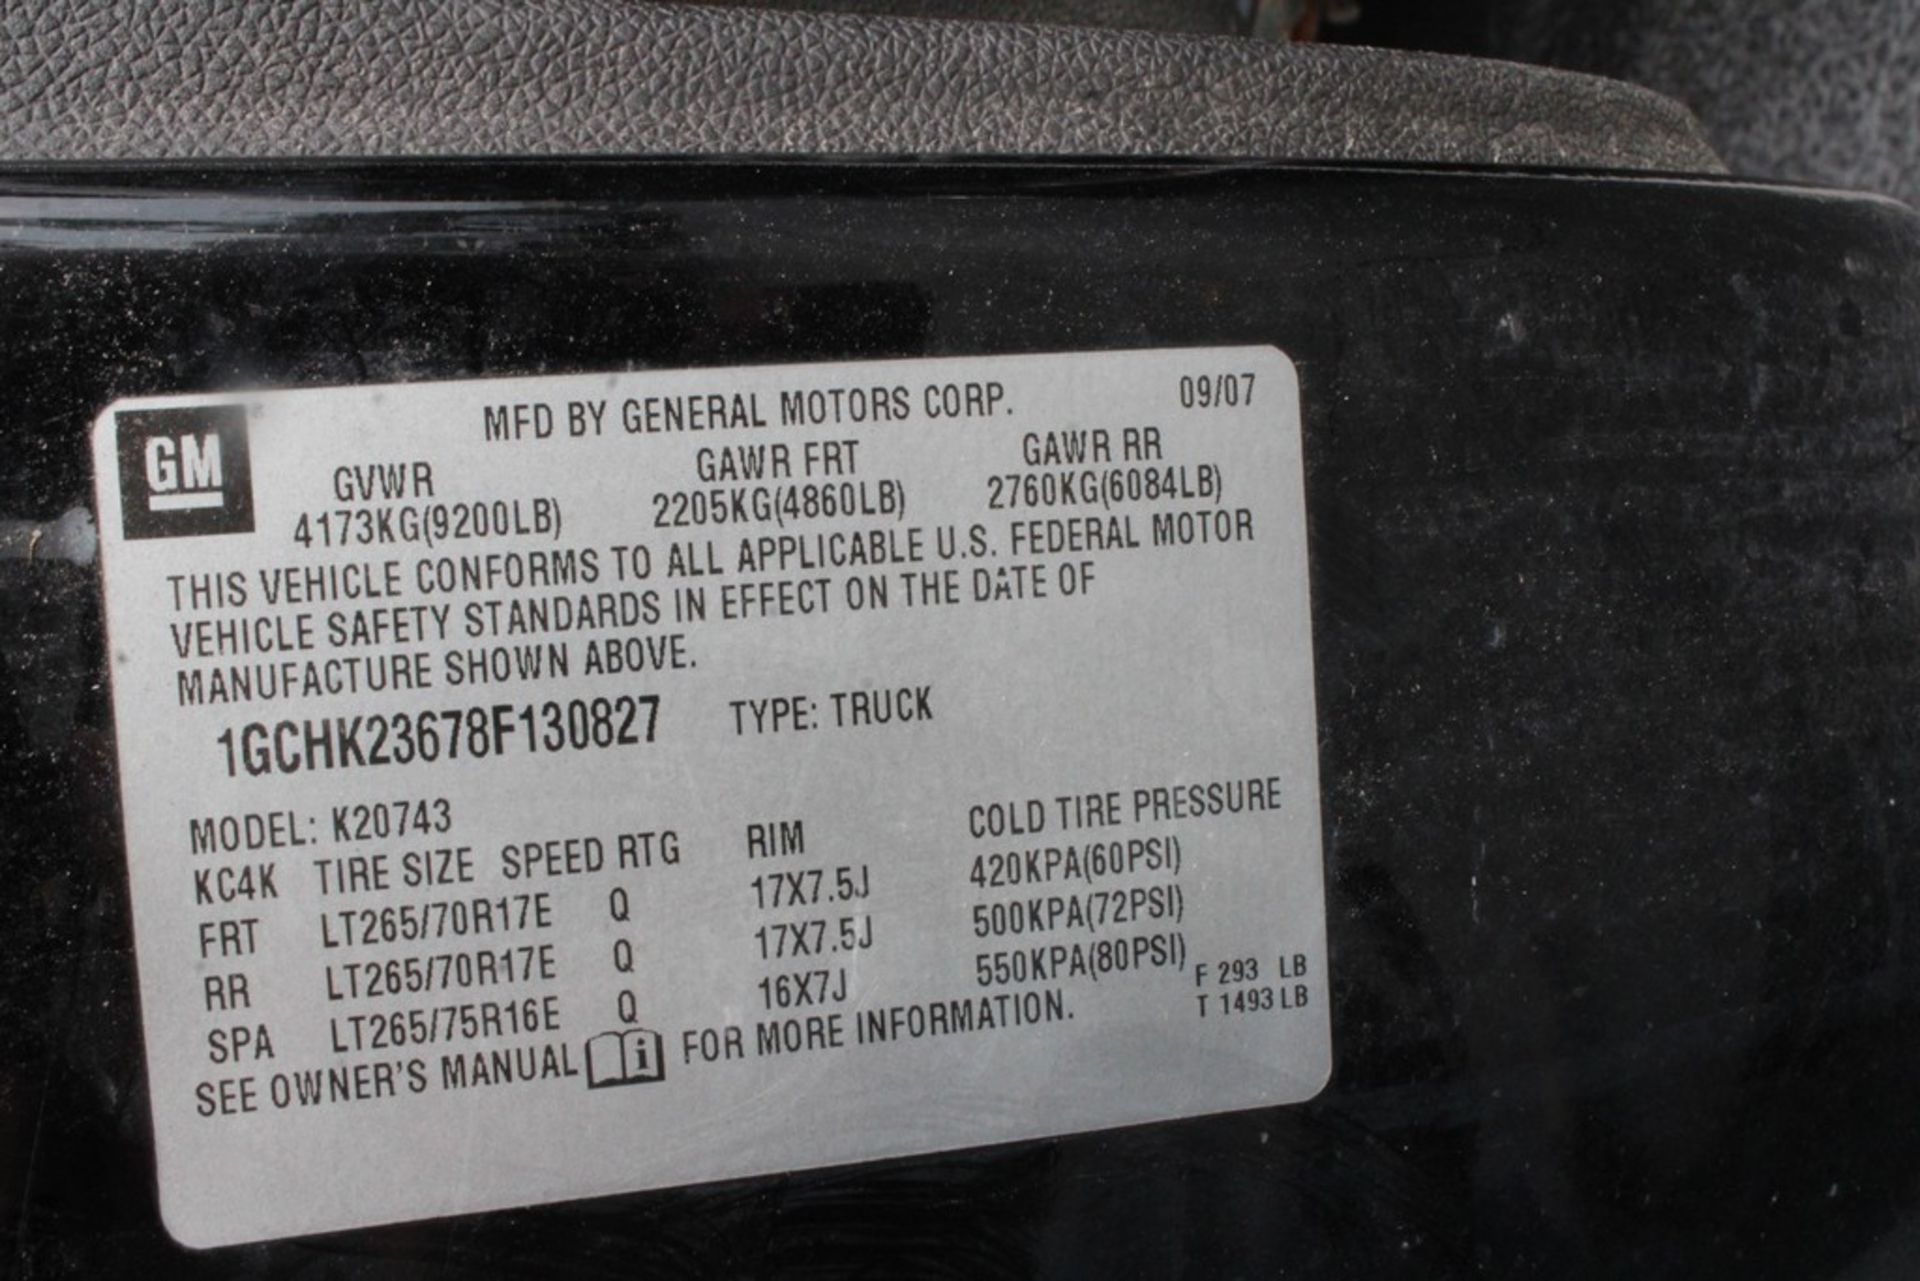 2008 CHEVROLET SILVERADO 2500HD CREW CAB PICKUP TRUCK, 6.6L V8 TURBO DIESEL, VIN - Image 7 of 11